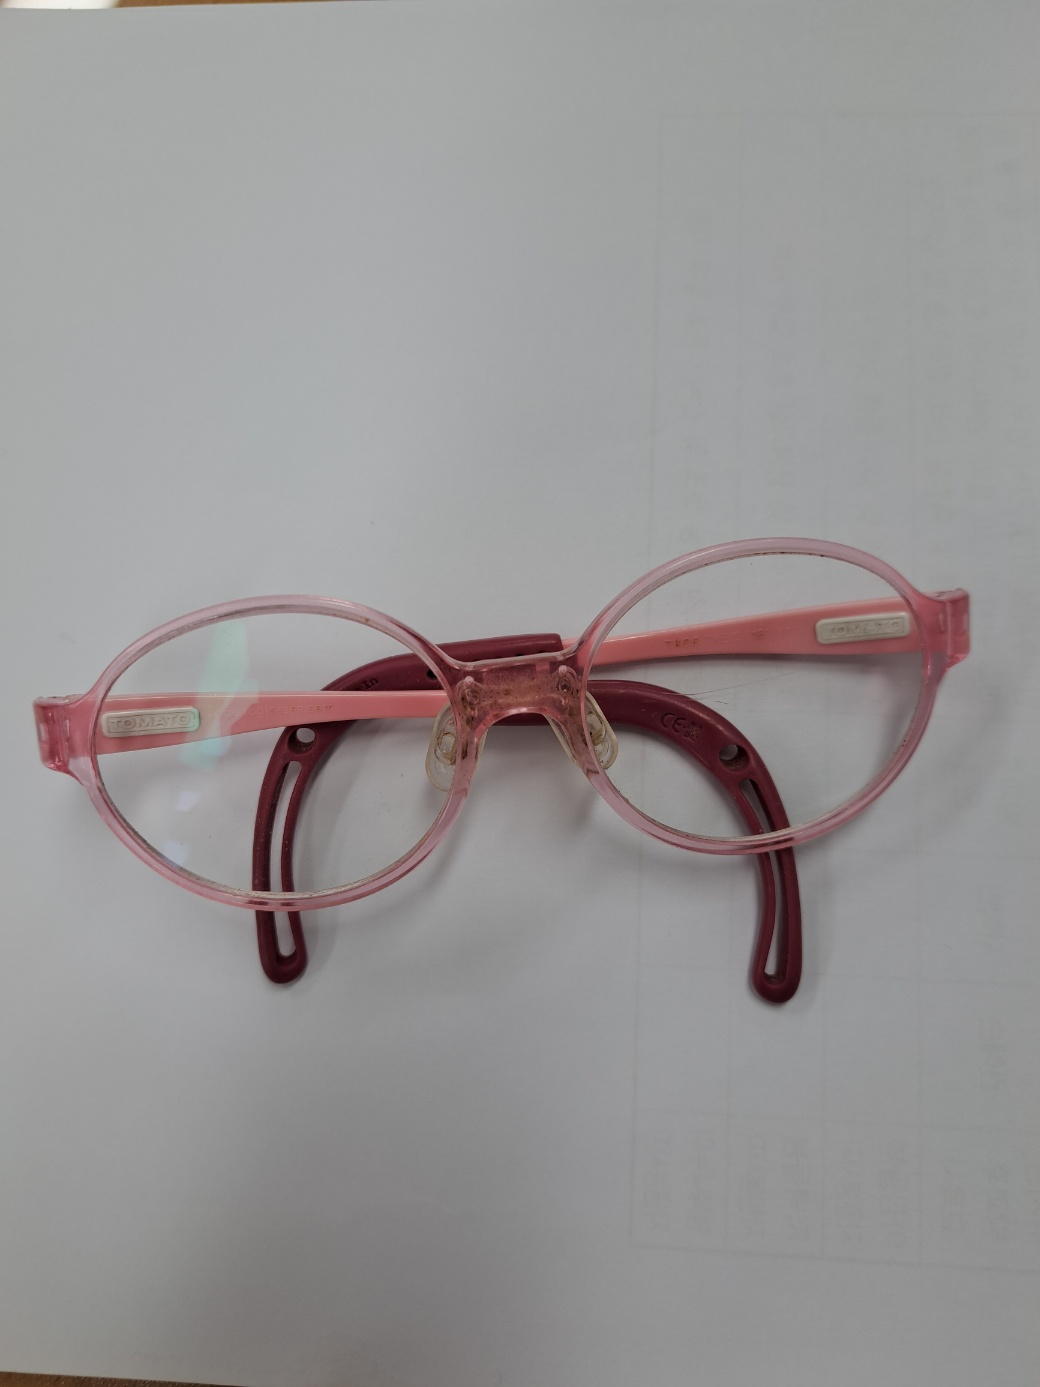 분홍색 안경은 교무실에서 보관중입니다.